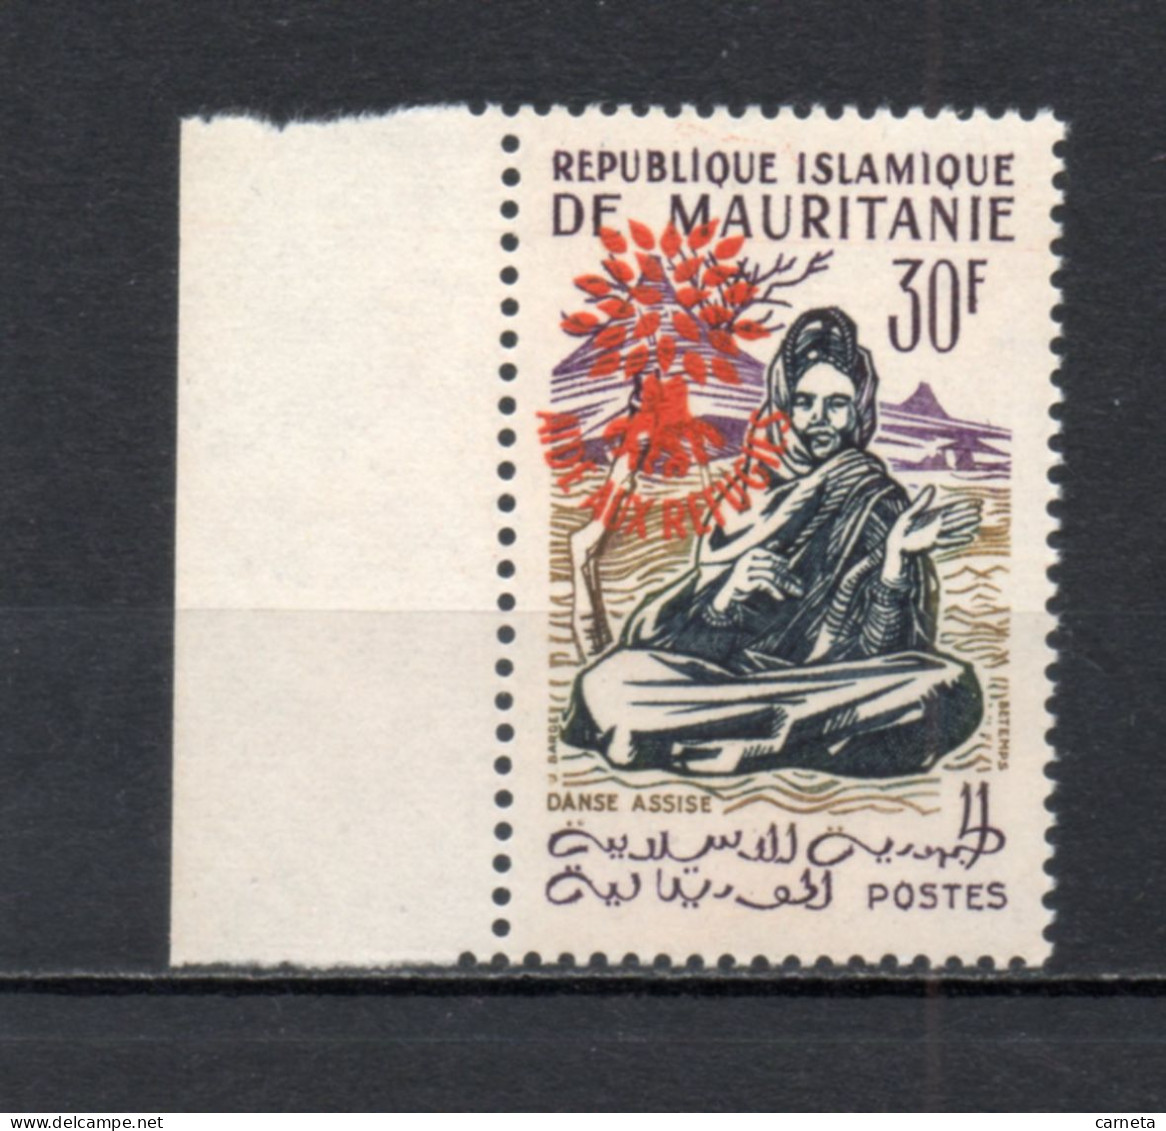 MAURITANIE  N° 154E   NEUF SANS CHARNIERE   COTE 20.00€    DANSE AIDE AUX REFIGIES SURCHARGE - Mauritanie (1960-...)